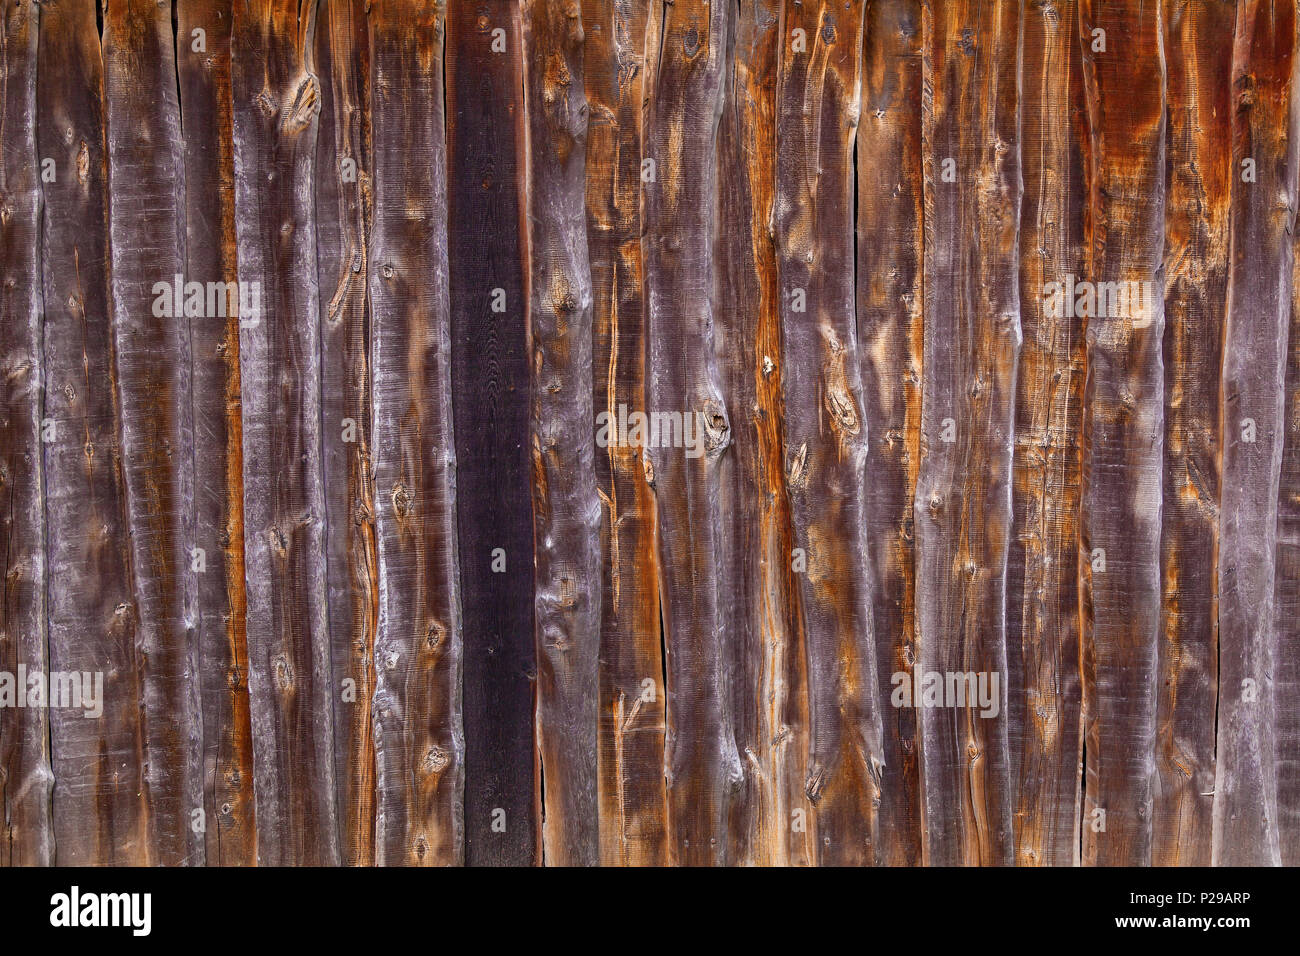 Holz Textur Der Platten In Der Alten Farbe Pastell Holzplanken Textur Hintergrund Stockfotografie Alamy